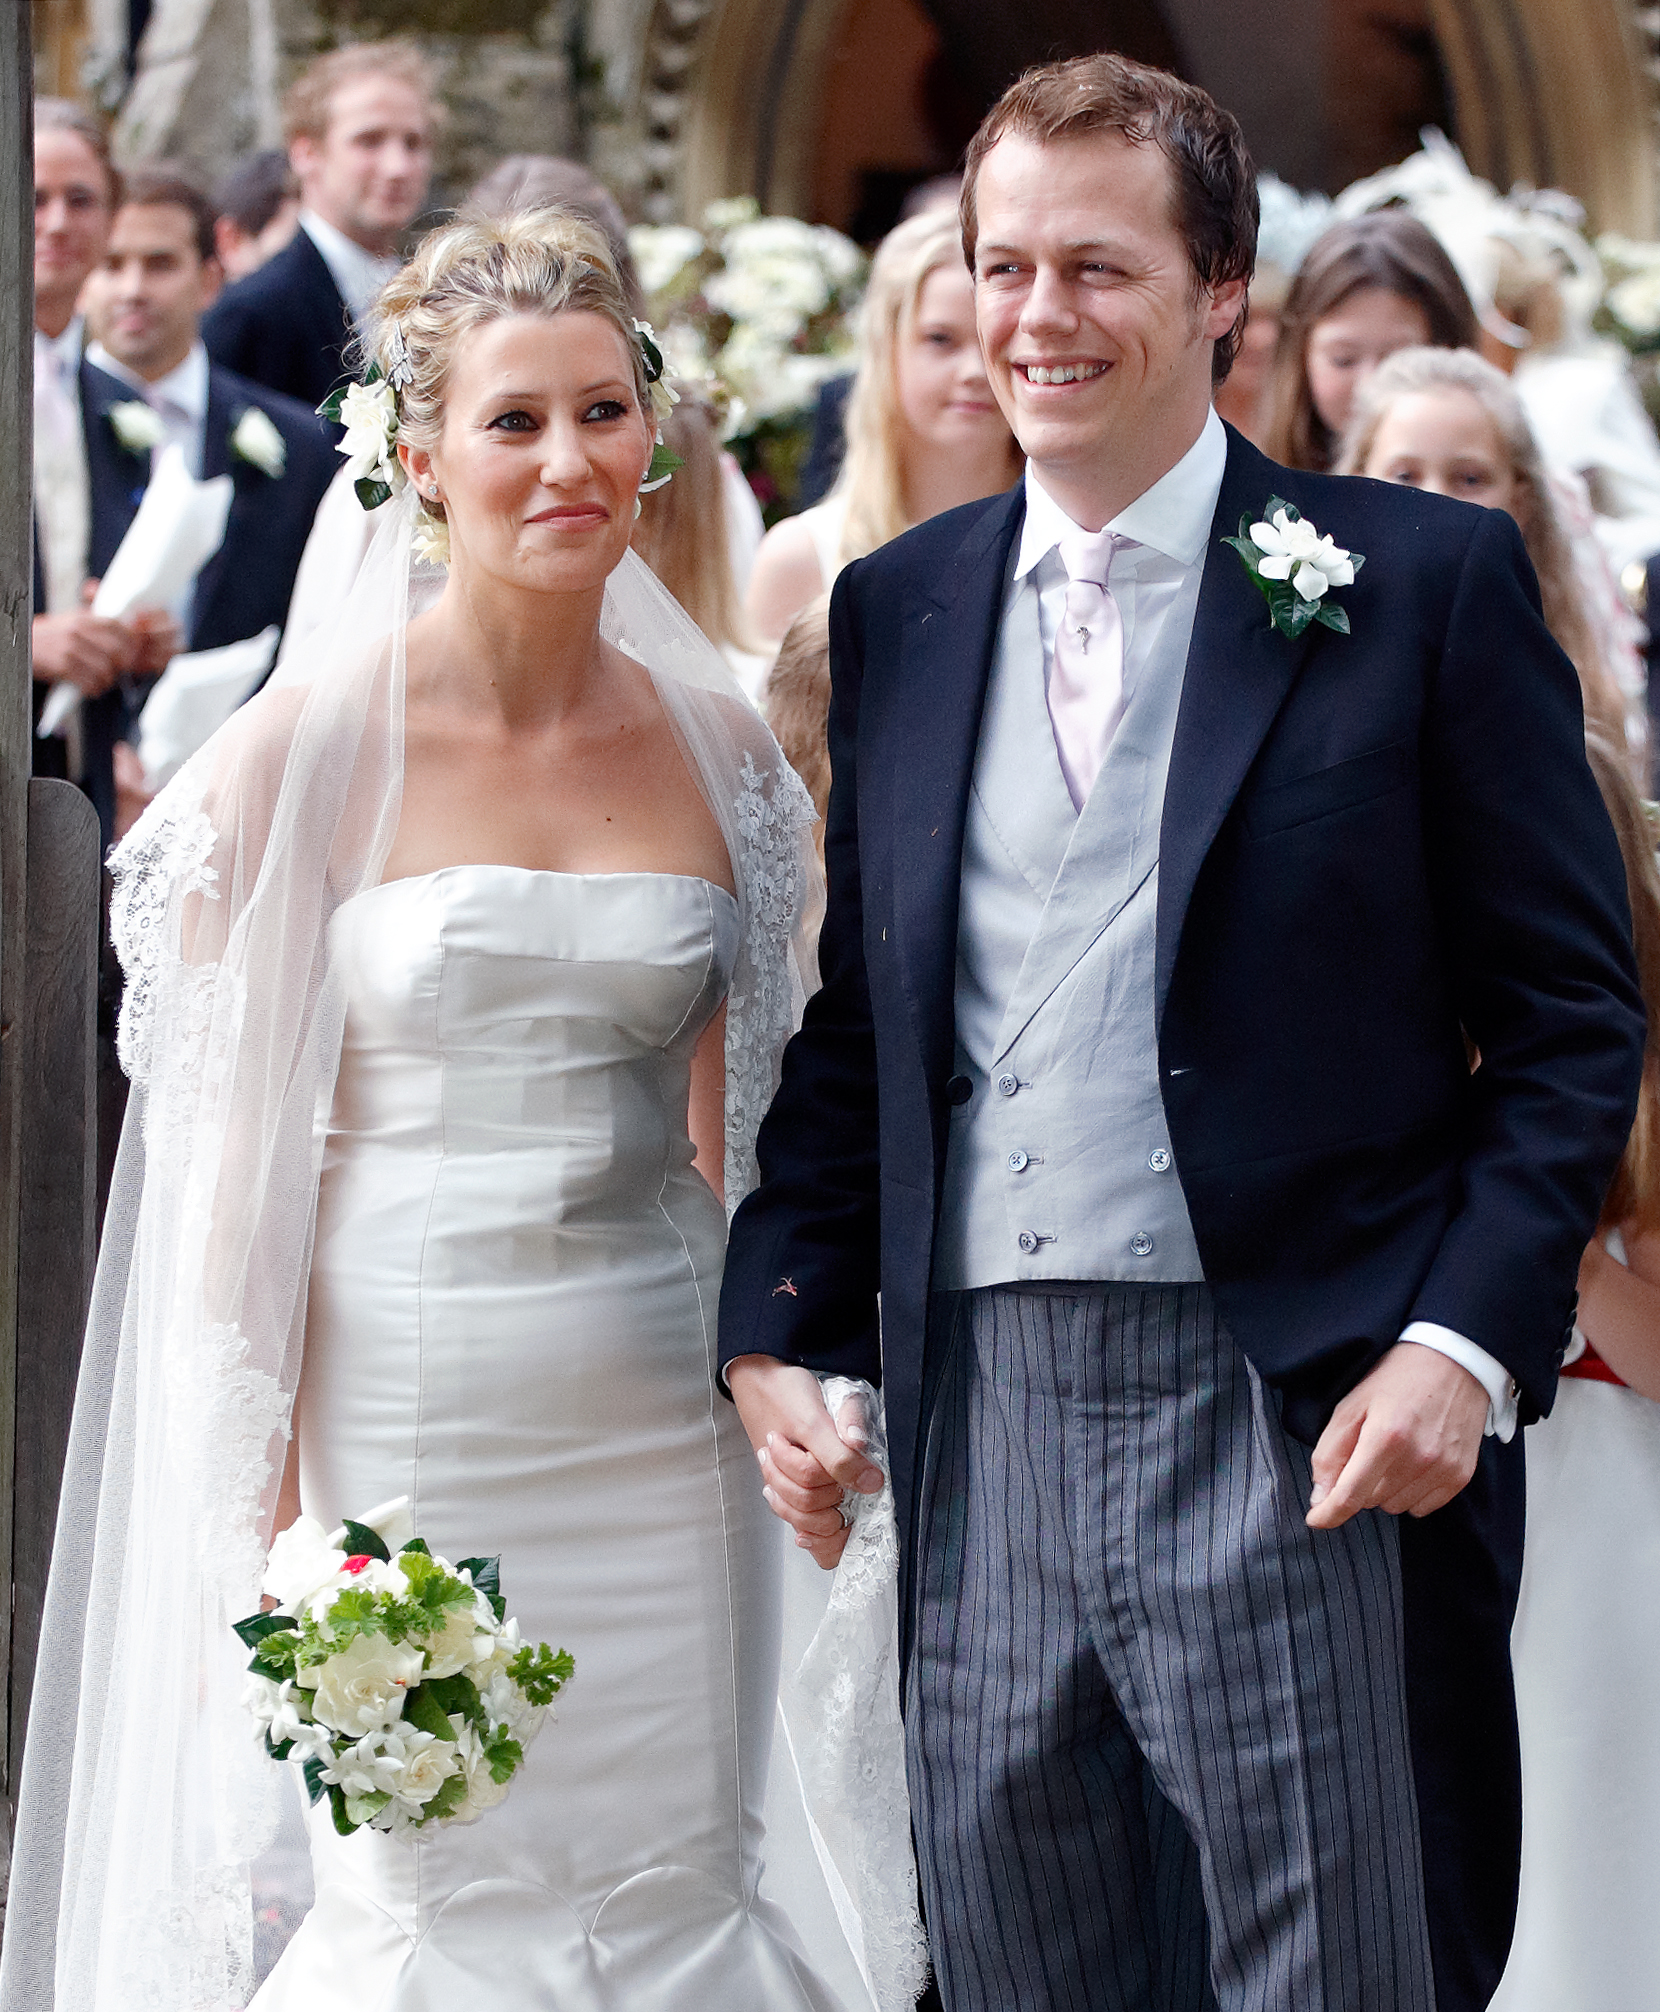 Die Hochzeit von Sara Buys und Tom Parker Bowles am 10. September 2005 in Rotherfield Greys, England. | Quelle: Getty Images